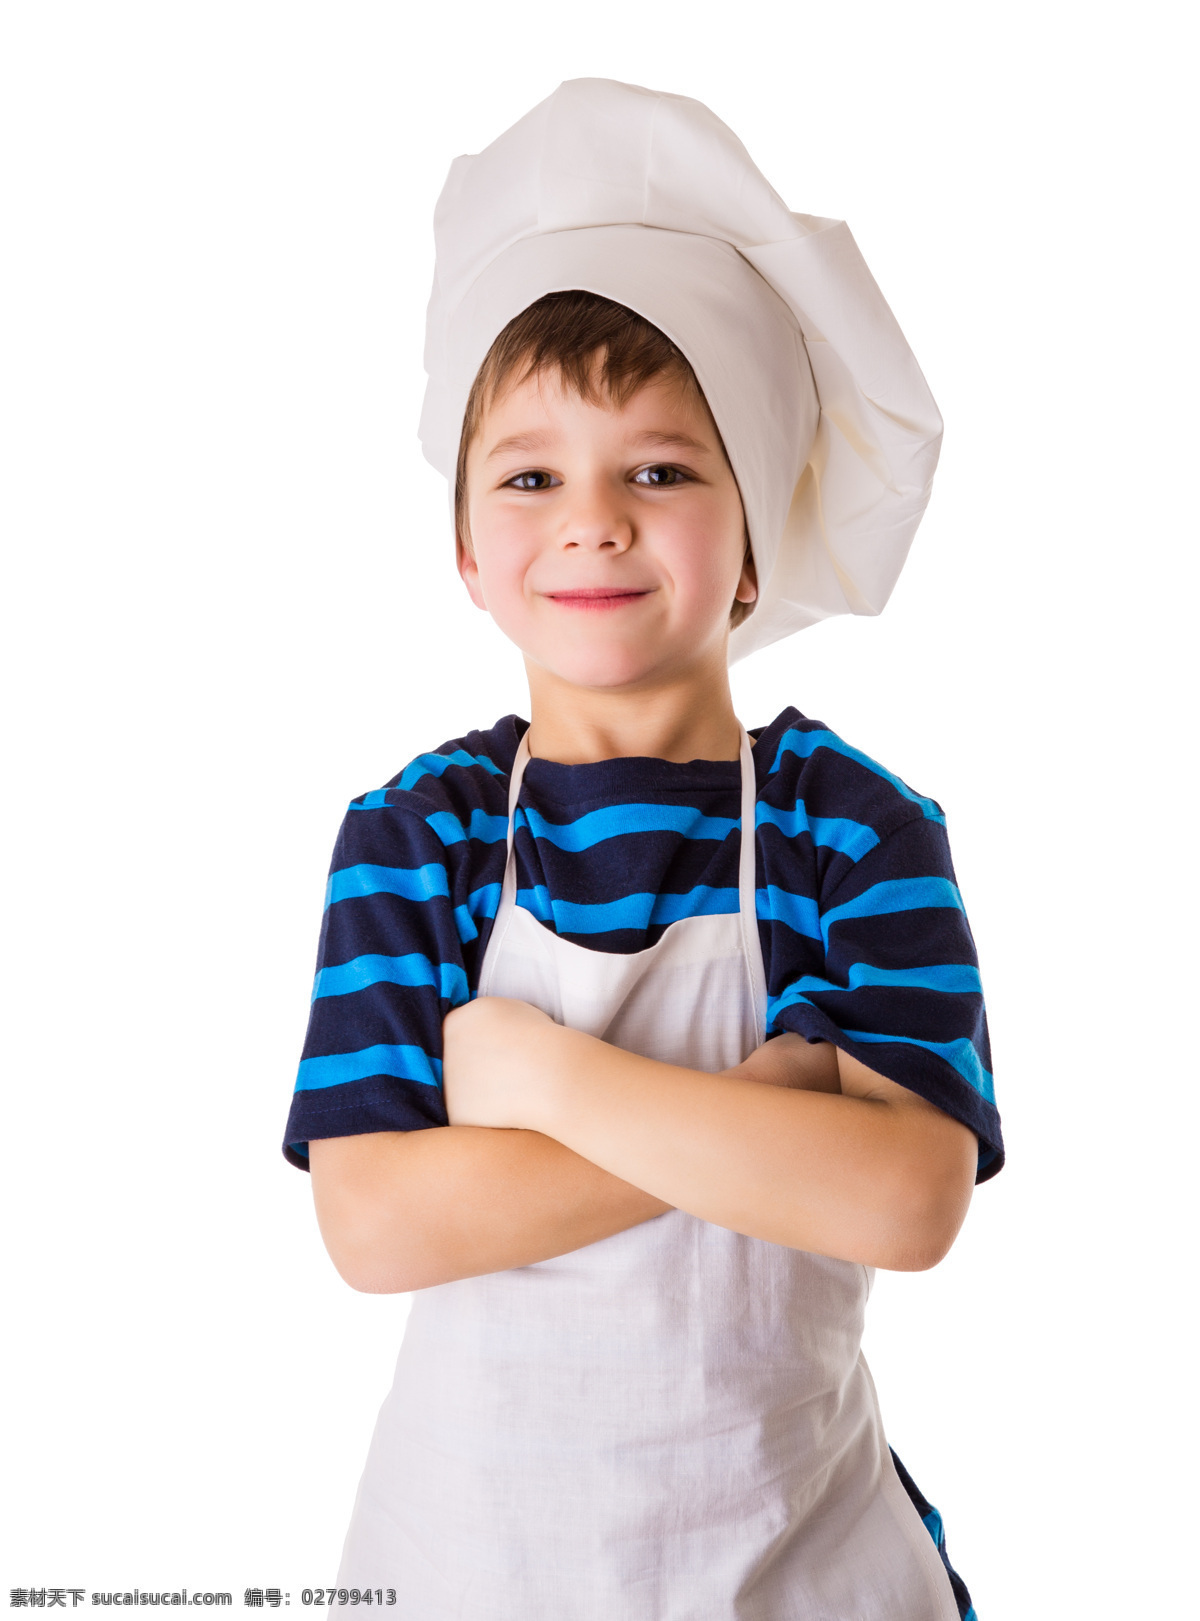 双手 抱 胸 孩子 厨师 双手抱胸 人物 儿童 儿童图片 人物图片